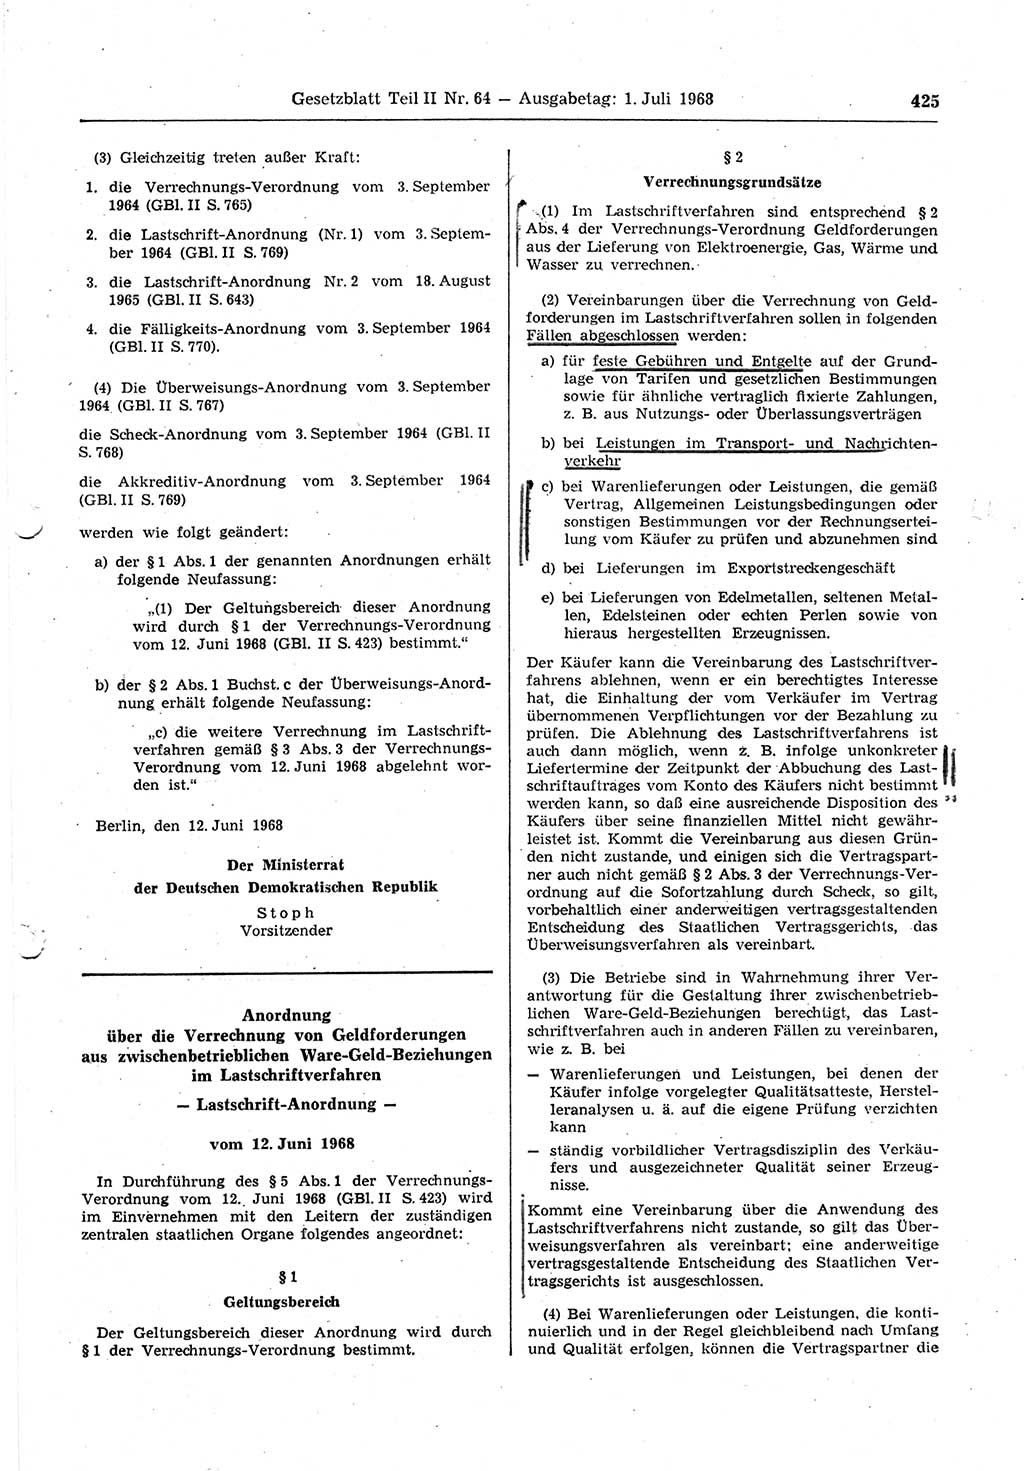 Gesetzblatt (GBl.) der Deutschen Demokratischen Republik (DDR) Teil ⅠⅠ 1968, Seite 425 (GBl. DDR ⅠⅠ 1968, S. 425)